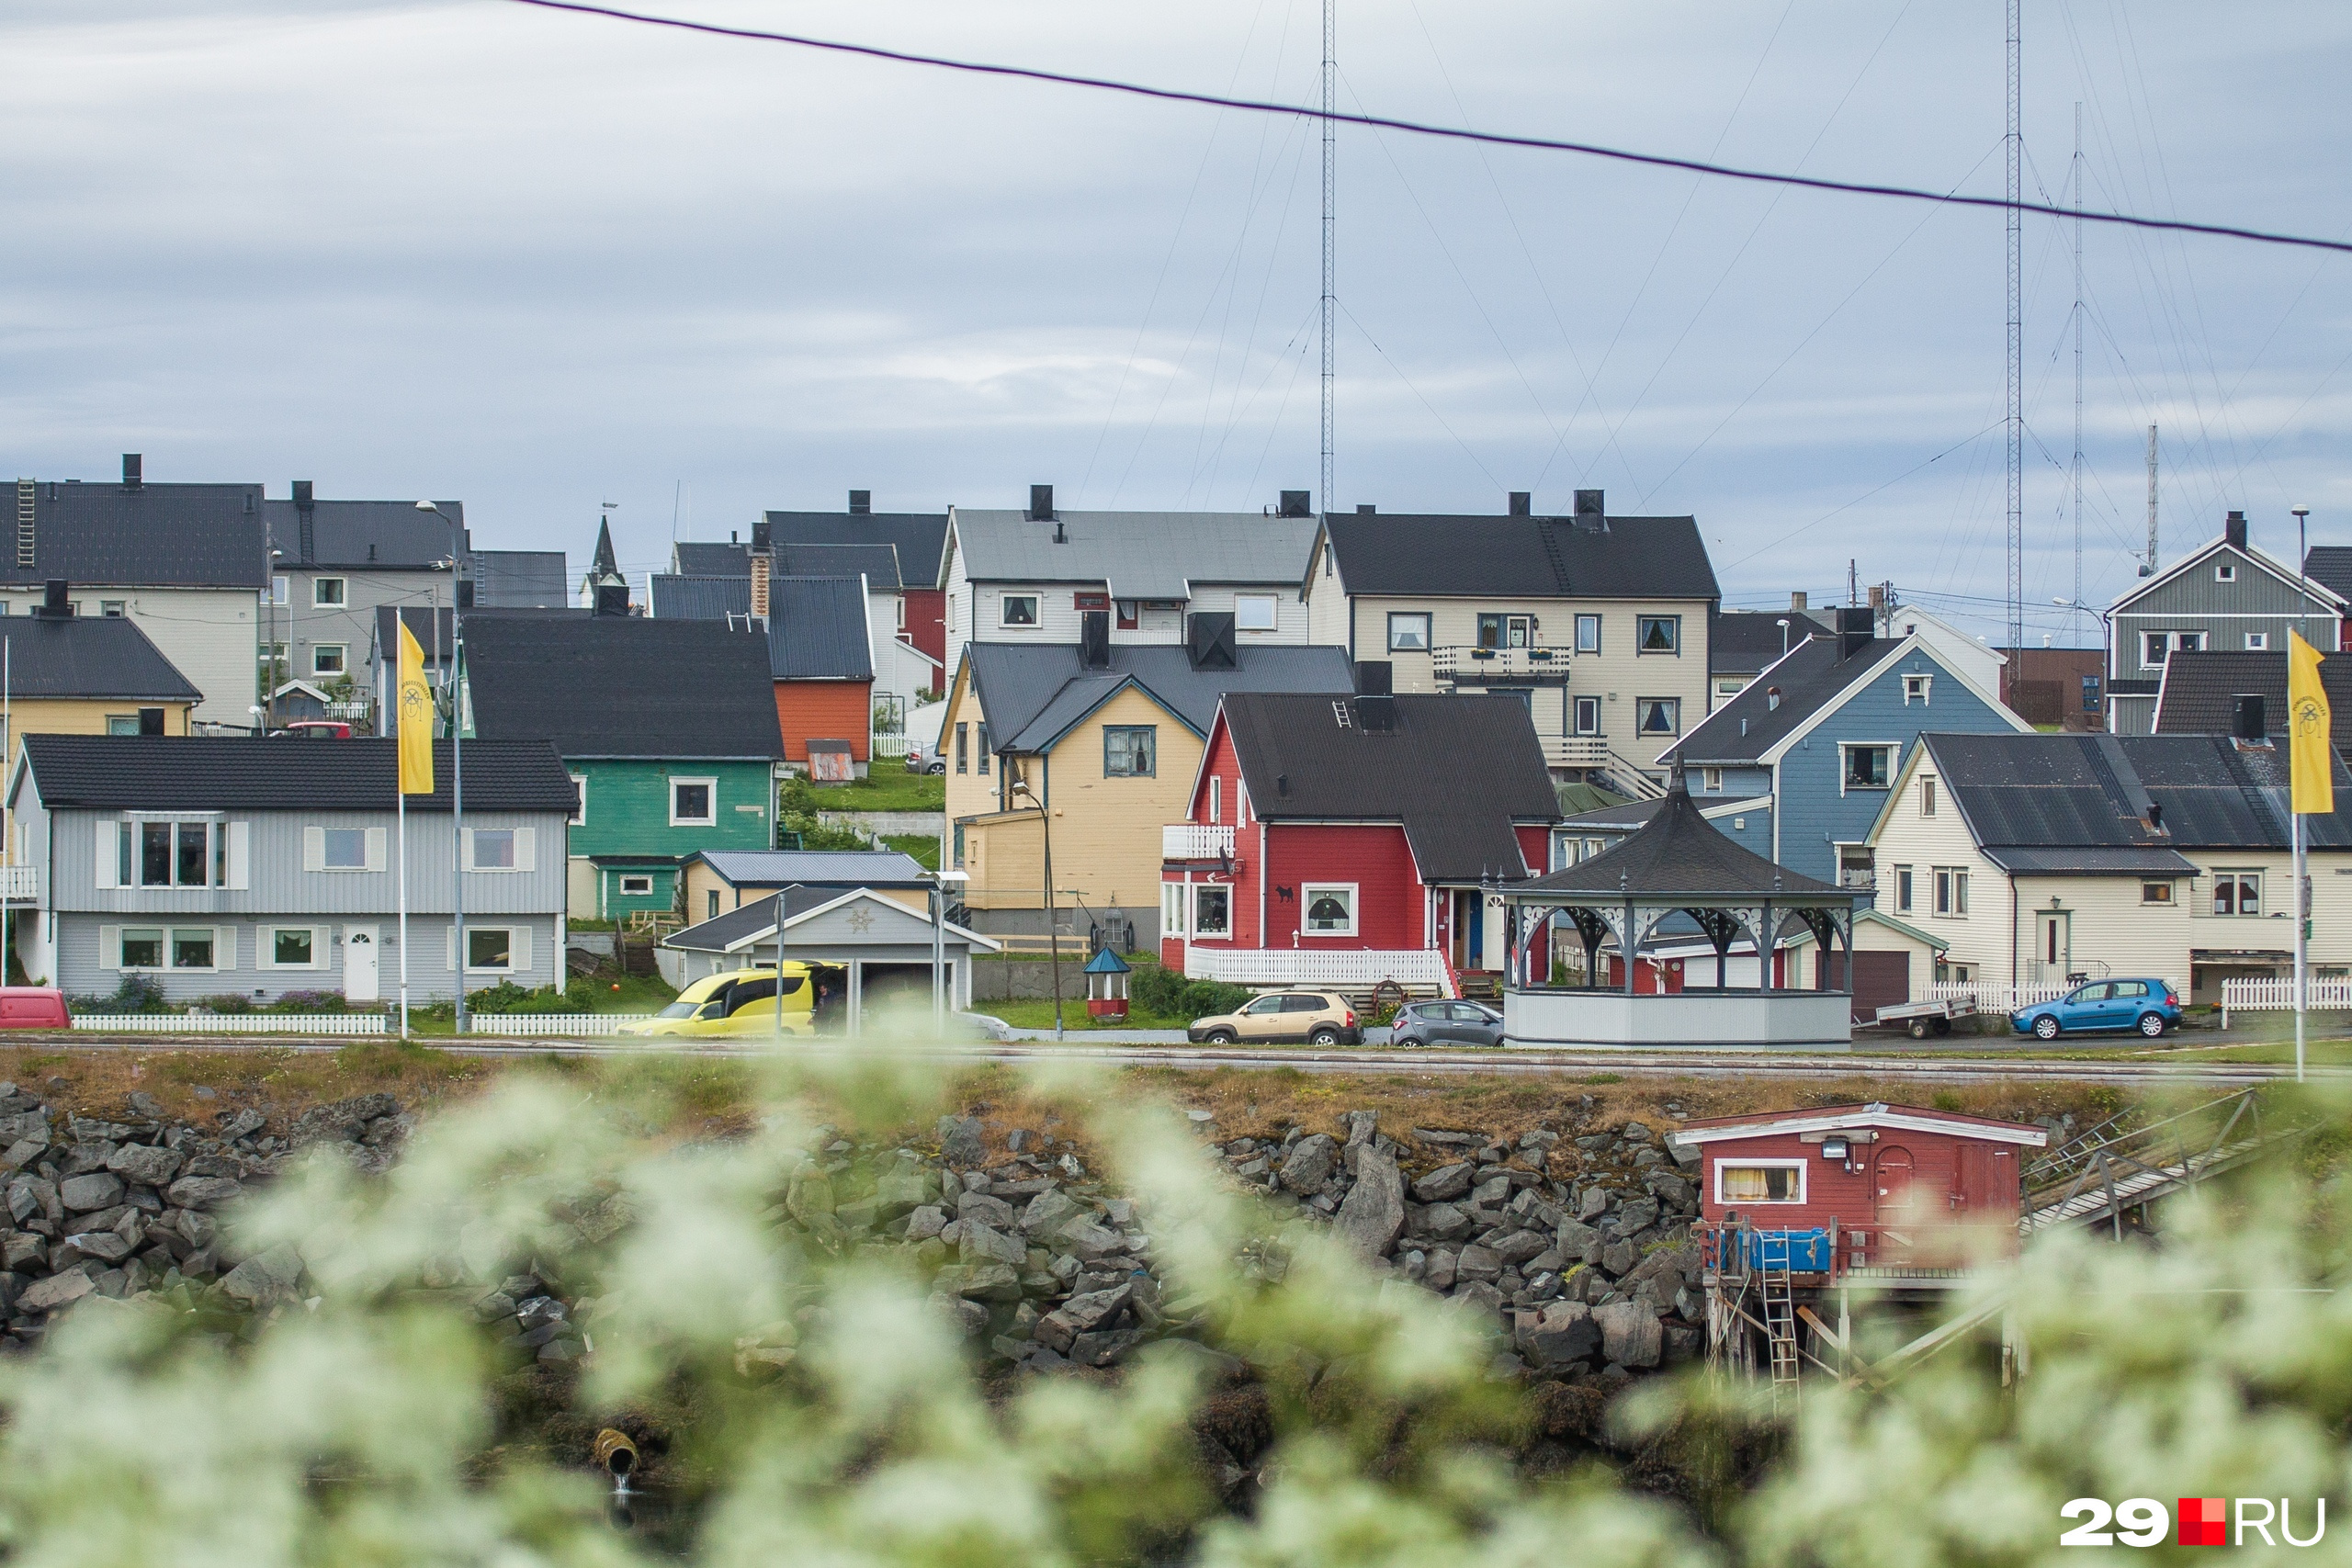 Вардё — тихий норвежский городок, который просыпается и даже шумит с приездом «Сборной Тайболы» на Поморский фестиваль